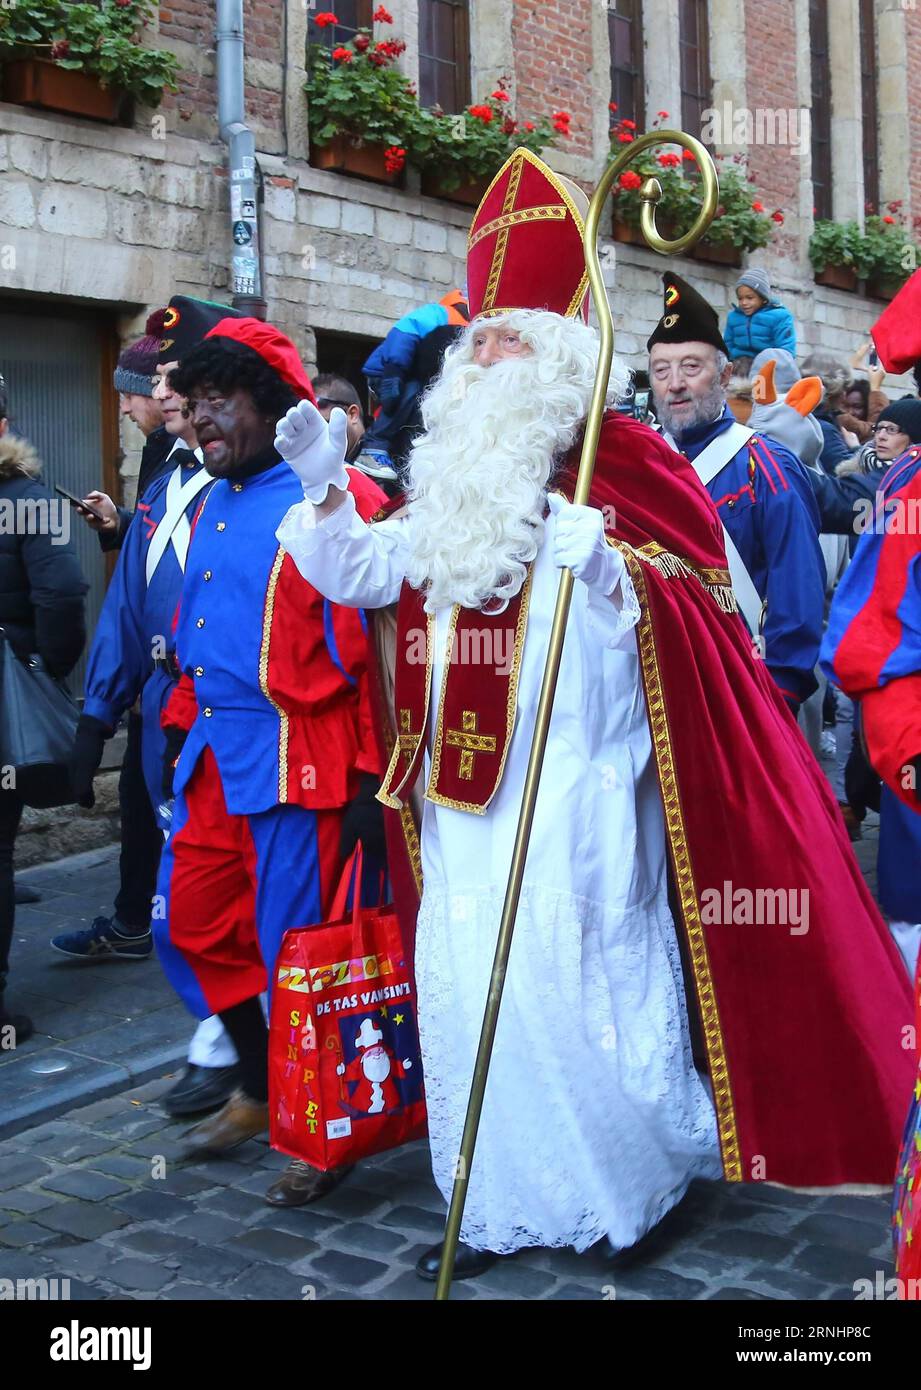 Saint-Nicolas und seine Helfer nehmen an der Saint-Nicolas-Parade in Brüssel, Belgien, am 3. Dezember 2016 Teil. Saint-Nicolas, einer der Quellen der beliebten Weihnachtssymbole des Weihnachtsmanns, wird jährlich am Nikolaustag gefeiert. )(gj) BELGIEN-BRÜSSEL-SAINT NICOLAS GongxBing PUBLICATIONxNOTxINxCHN Saint Nicolas und seine Helfer nehmen an der Saint Nicolas Parade in Brüssel Teil DEC 3 2016 Saint Nicolas, einer der Quellen der beliebten Weihnachtsfigur des Santa Claus, WIRD jährlich AM St. Nikolaus Tag GJ Belgium Saint Nicolas GongxBing ÖFFENTLICH Stockfoto